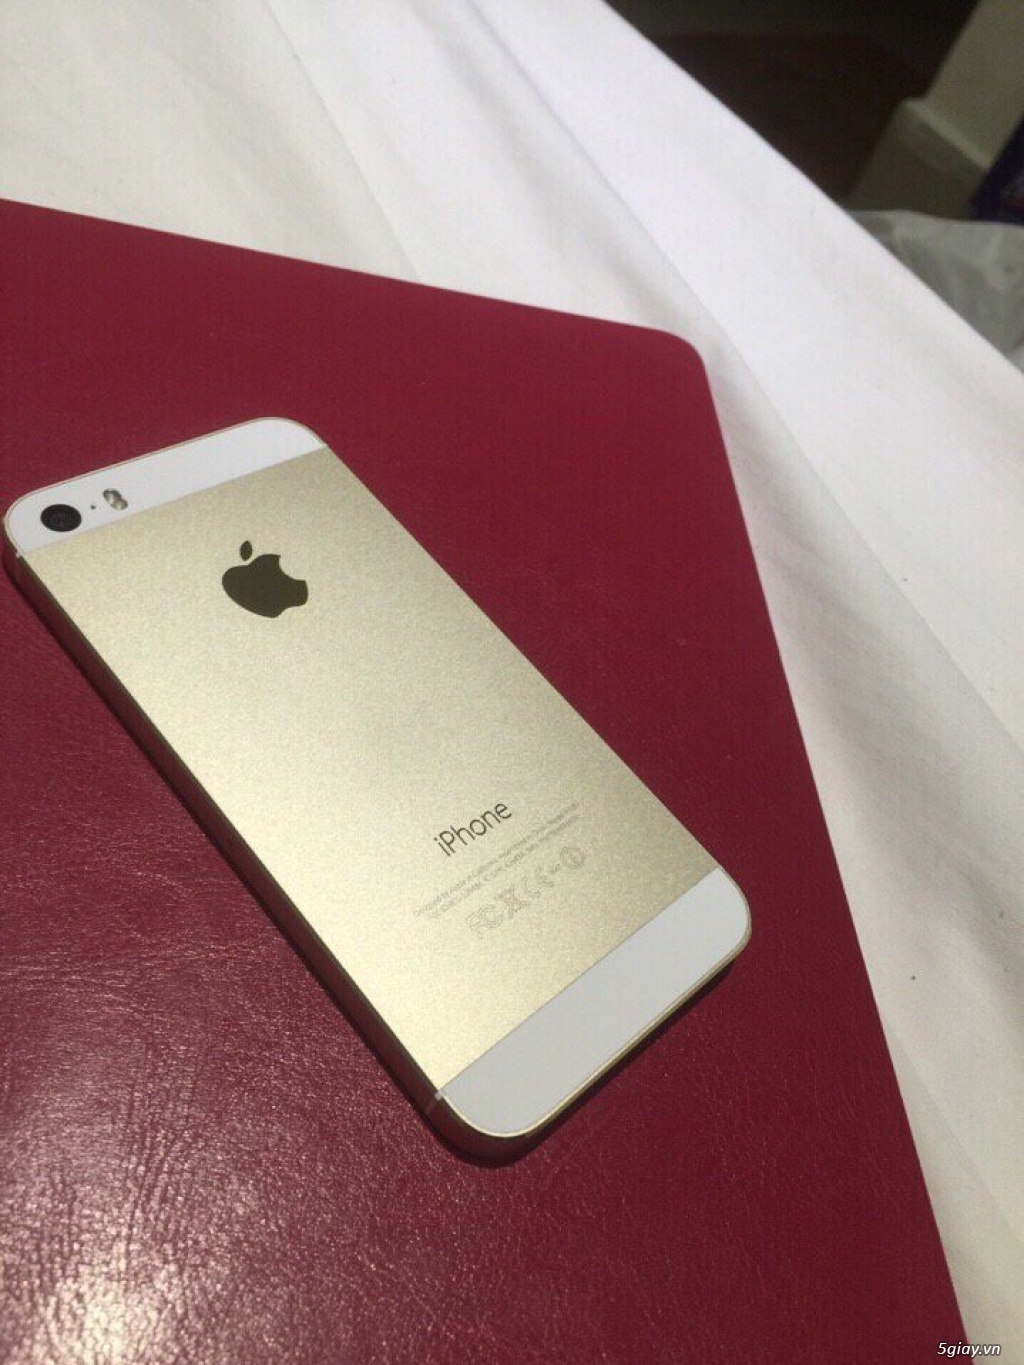 Iphone 5s gold 16gb hàng fpt còn bh 6 tháng